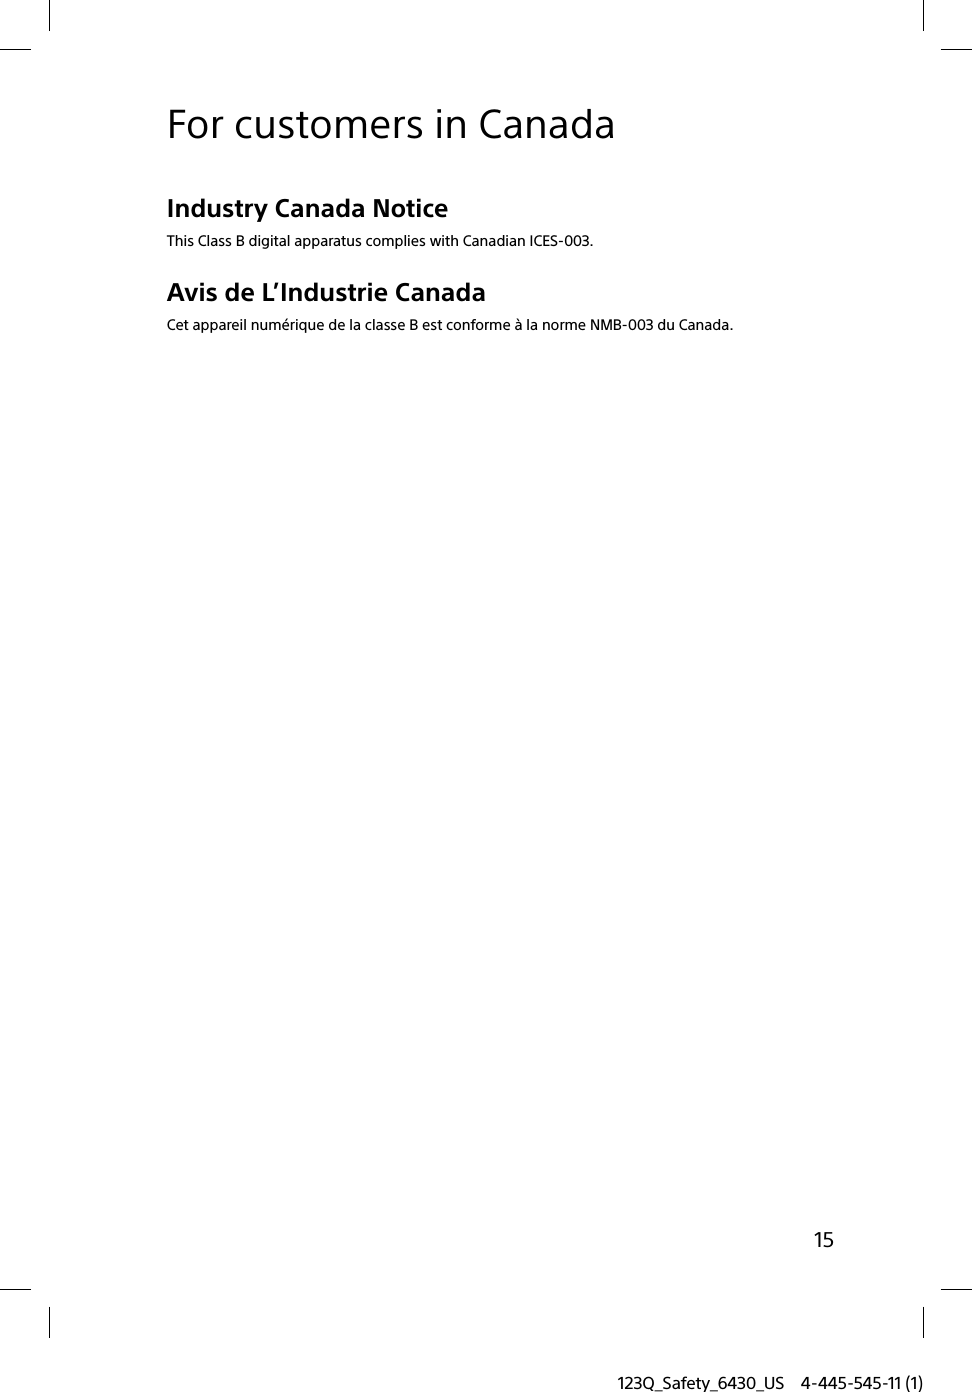 123Q_Safety_6430_US 4-445-545-11 (1)15For customers in CanadaIndustry Canada NoticeThis Class B digital apparatus complies with Canadian ICES-003.Avis de L’Industrie CanadaCet appareil numérique de la classe B est conforme à la norme NMB-003 du Canada.